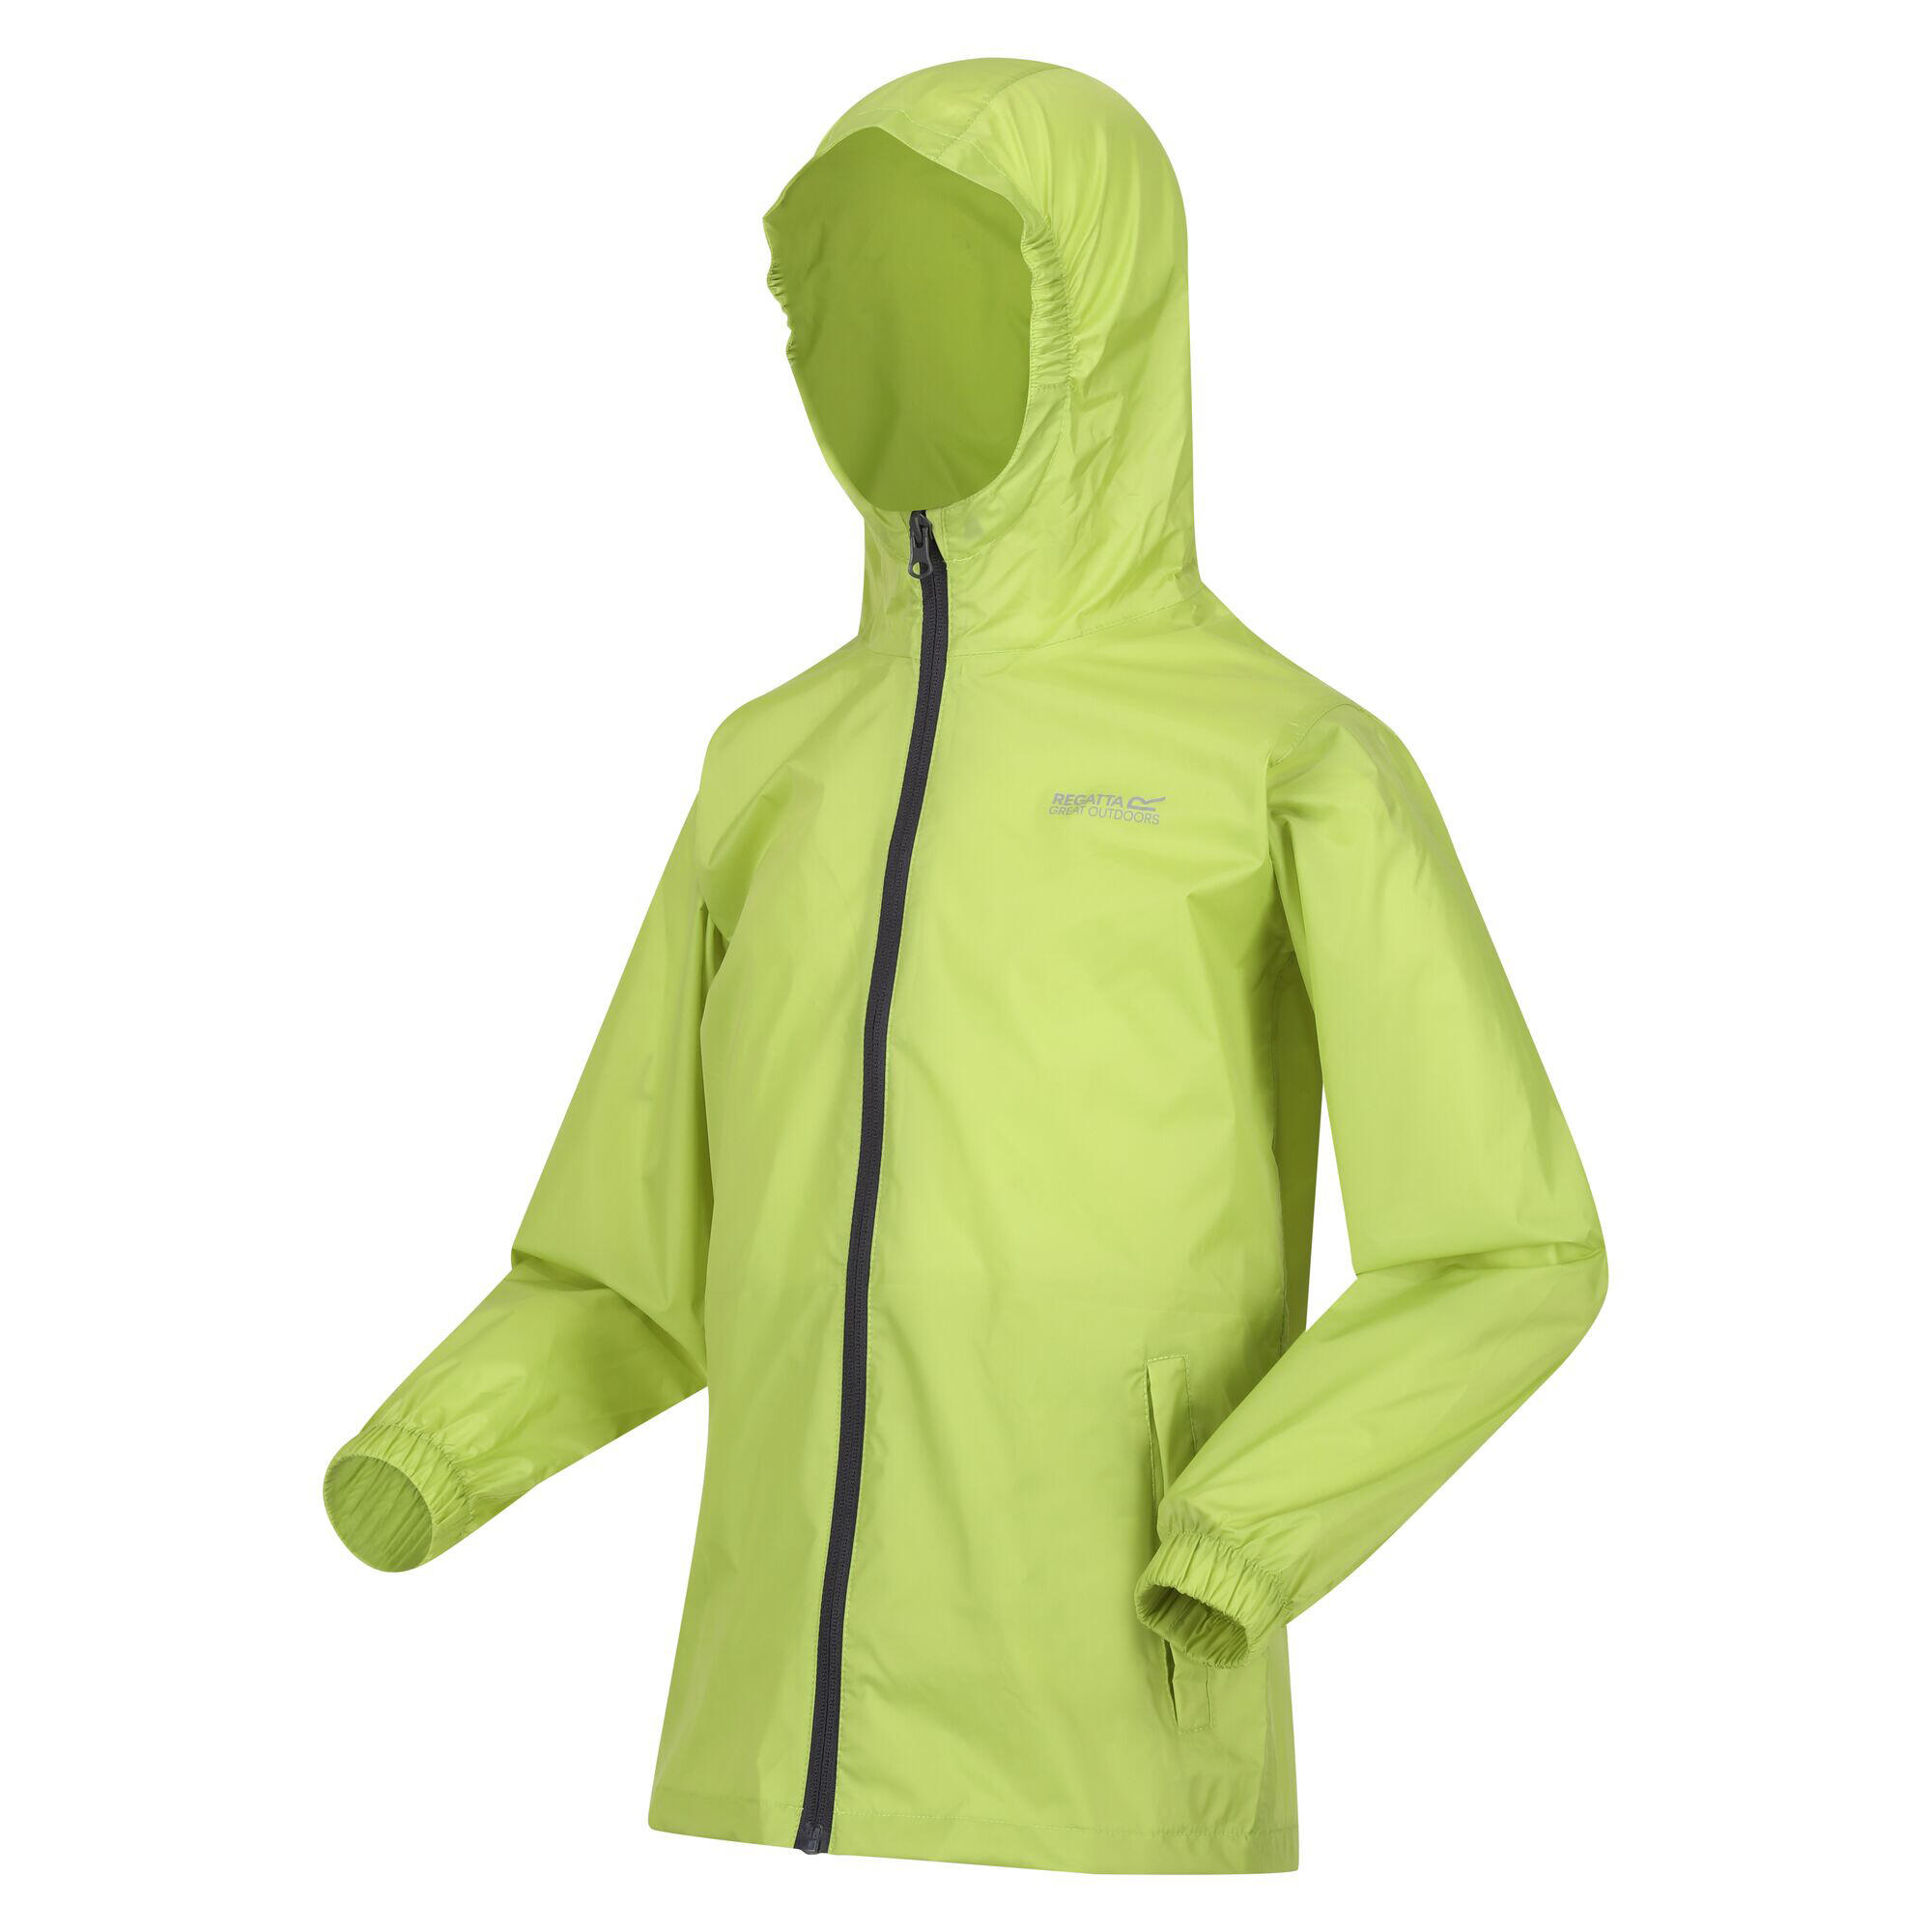 Great Outdoors Childrens/Kids Pack It Jacket III Waterproof Packaway Black 3/4